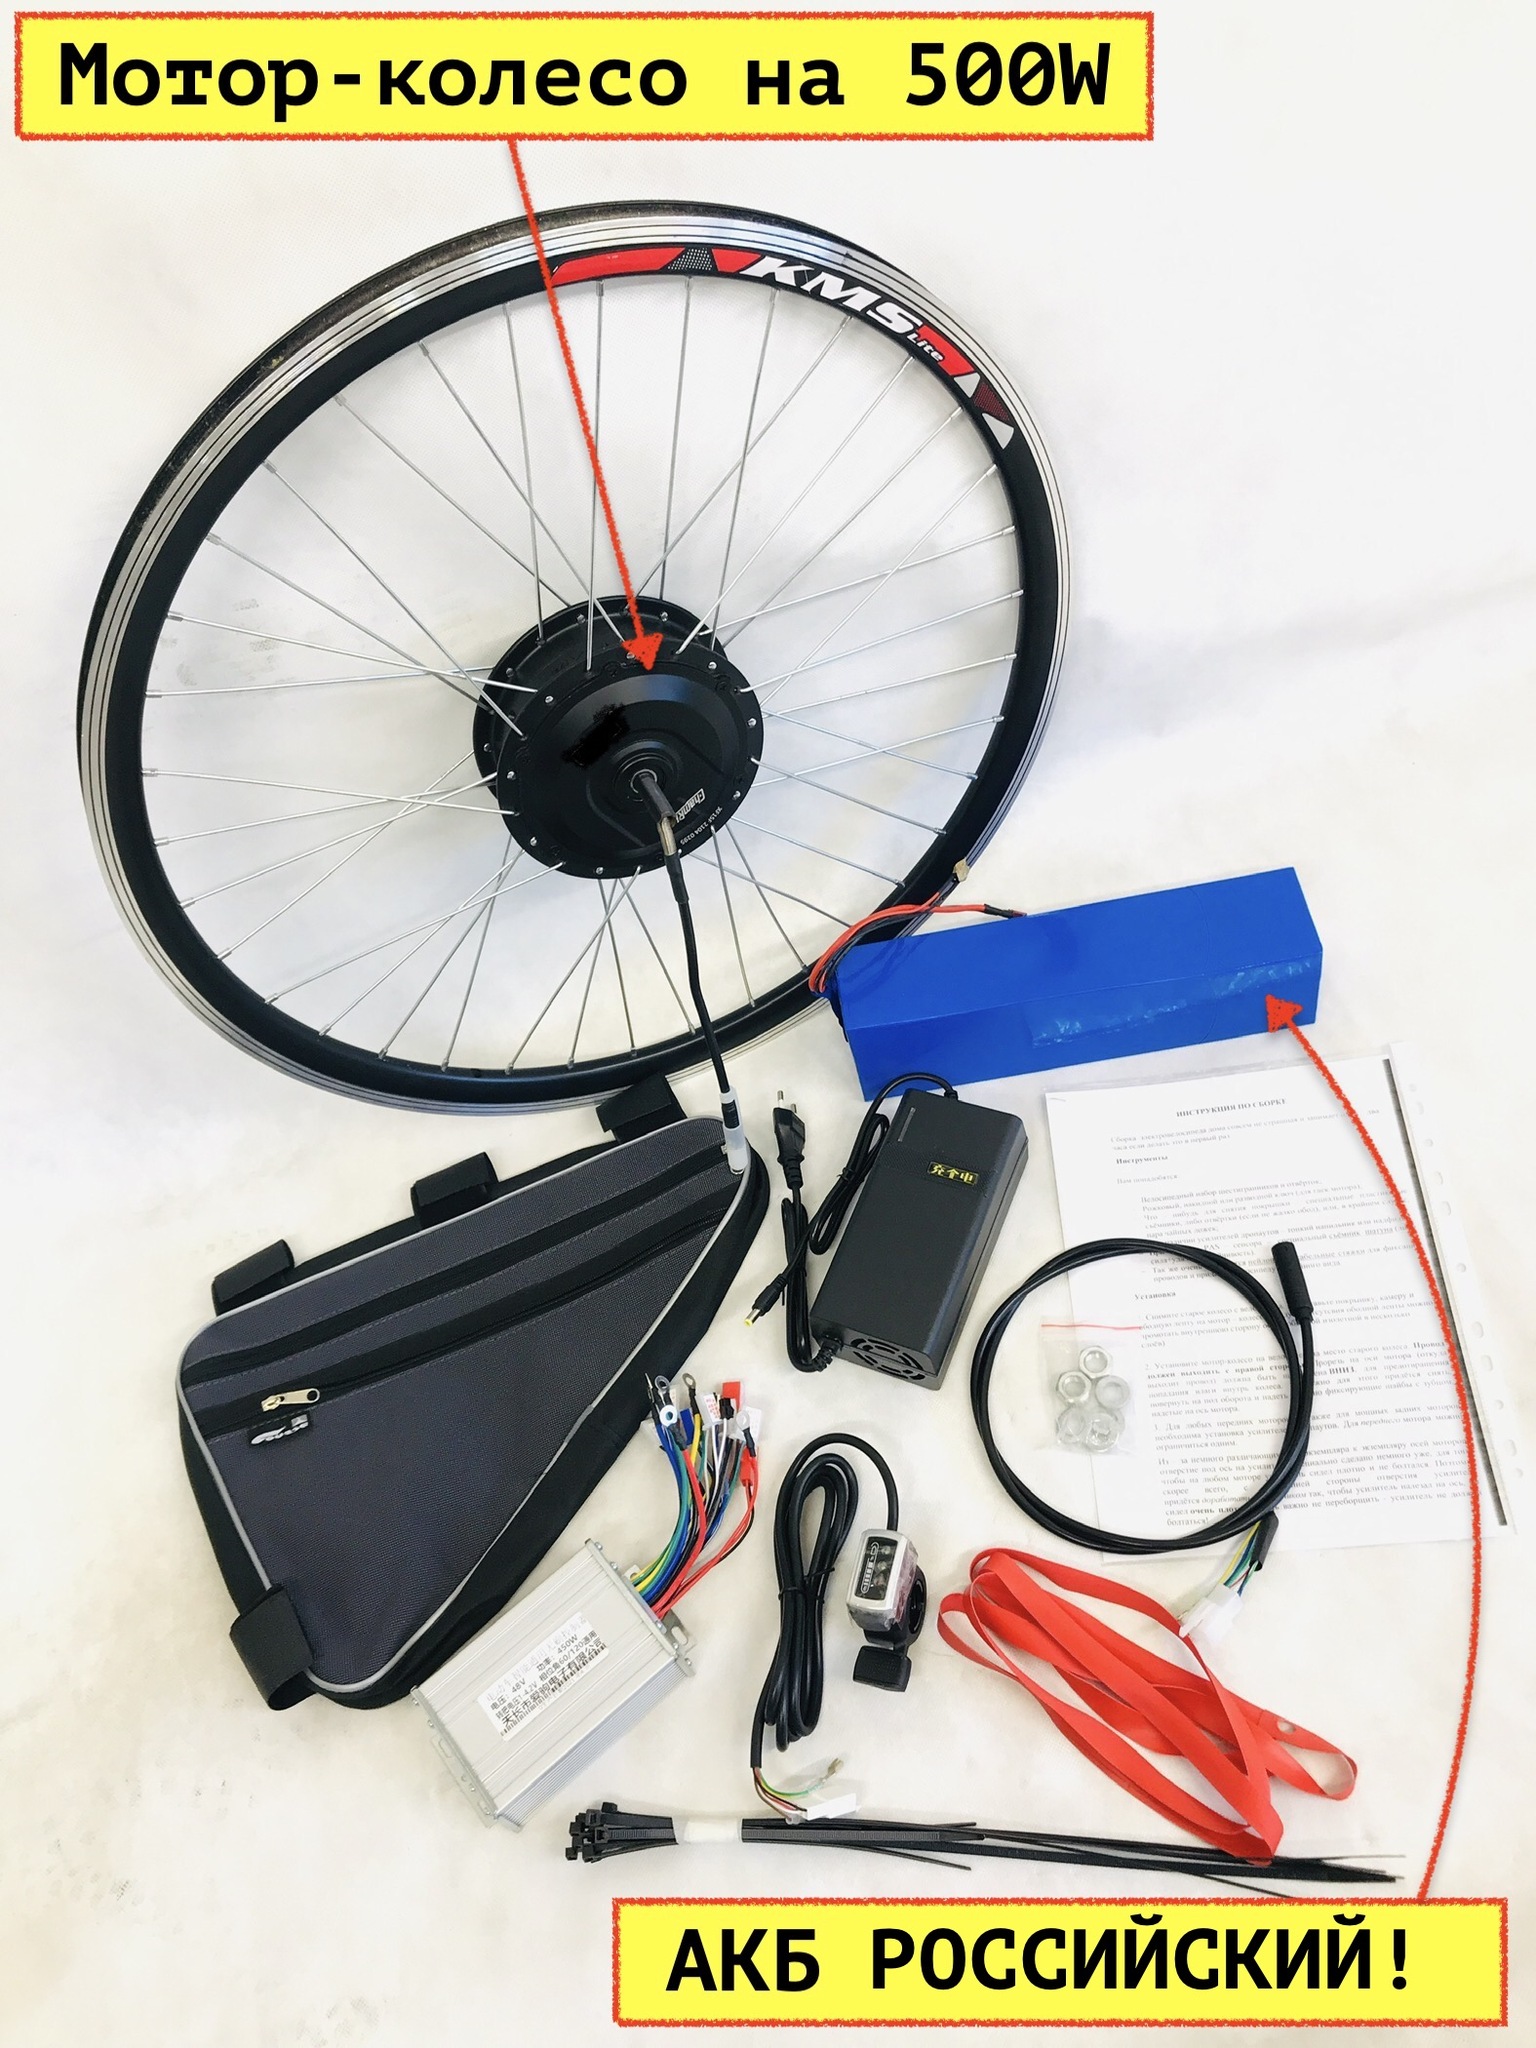 Революционное устройство компании Skarper превратит любой велосипед в электробайк